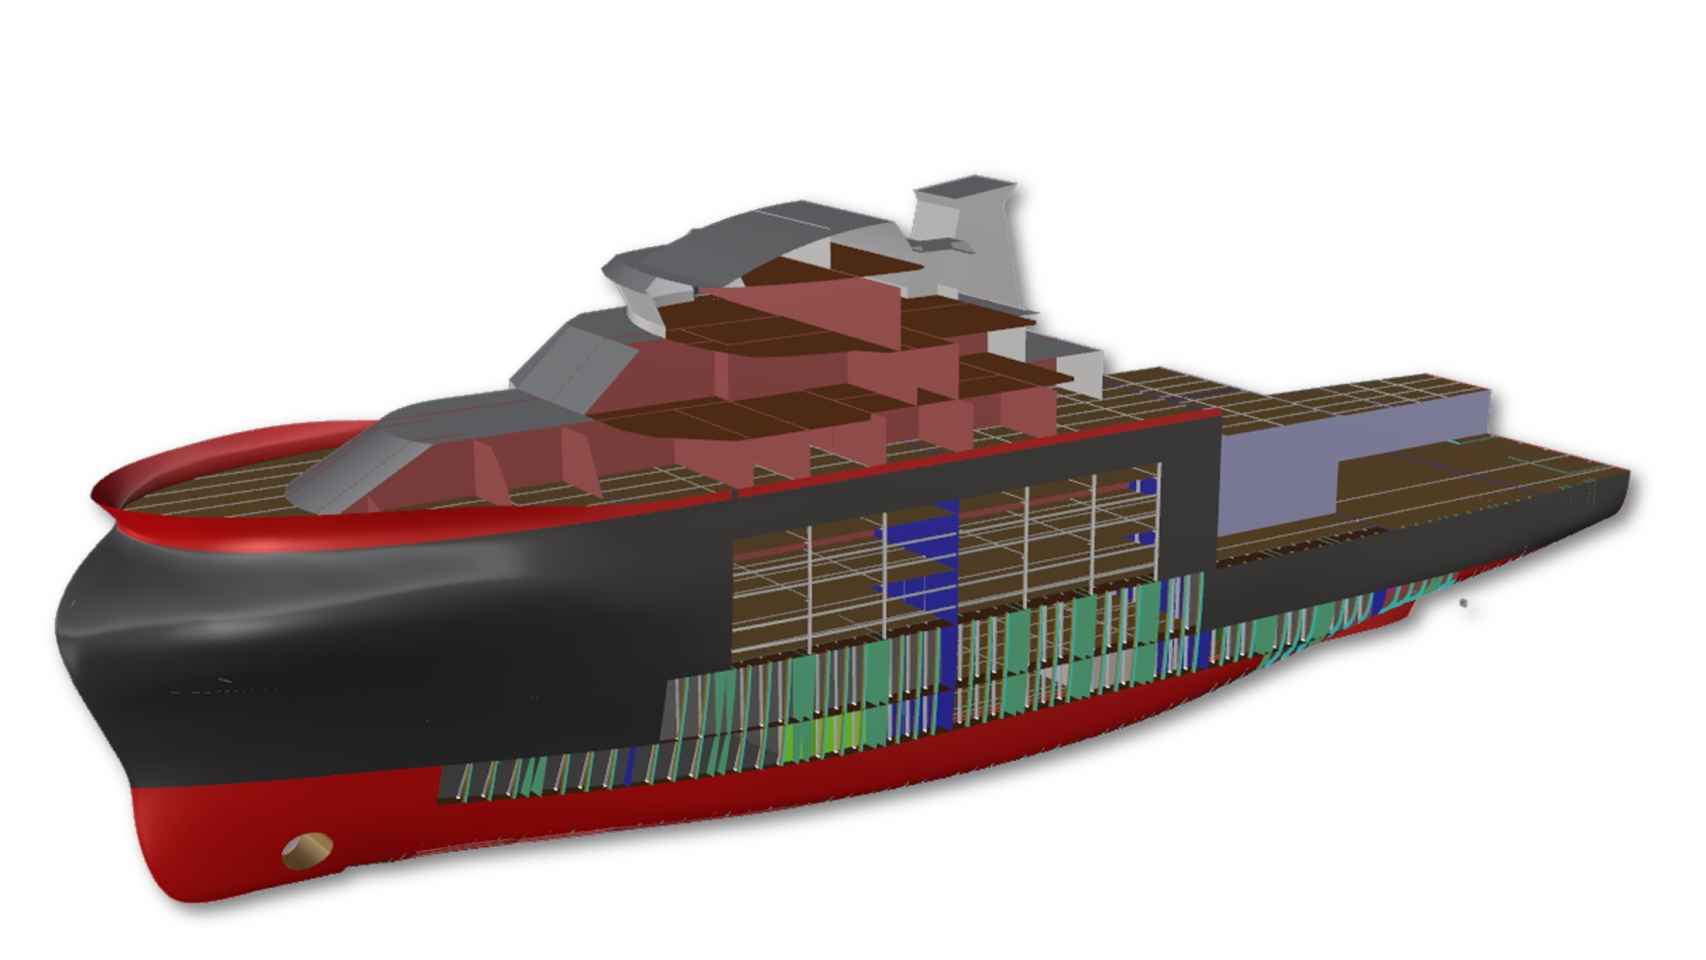 Imagen en ordenador de la estructura del buque.